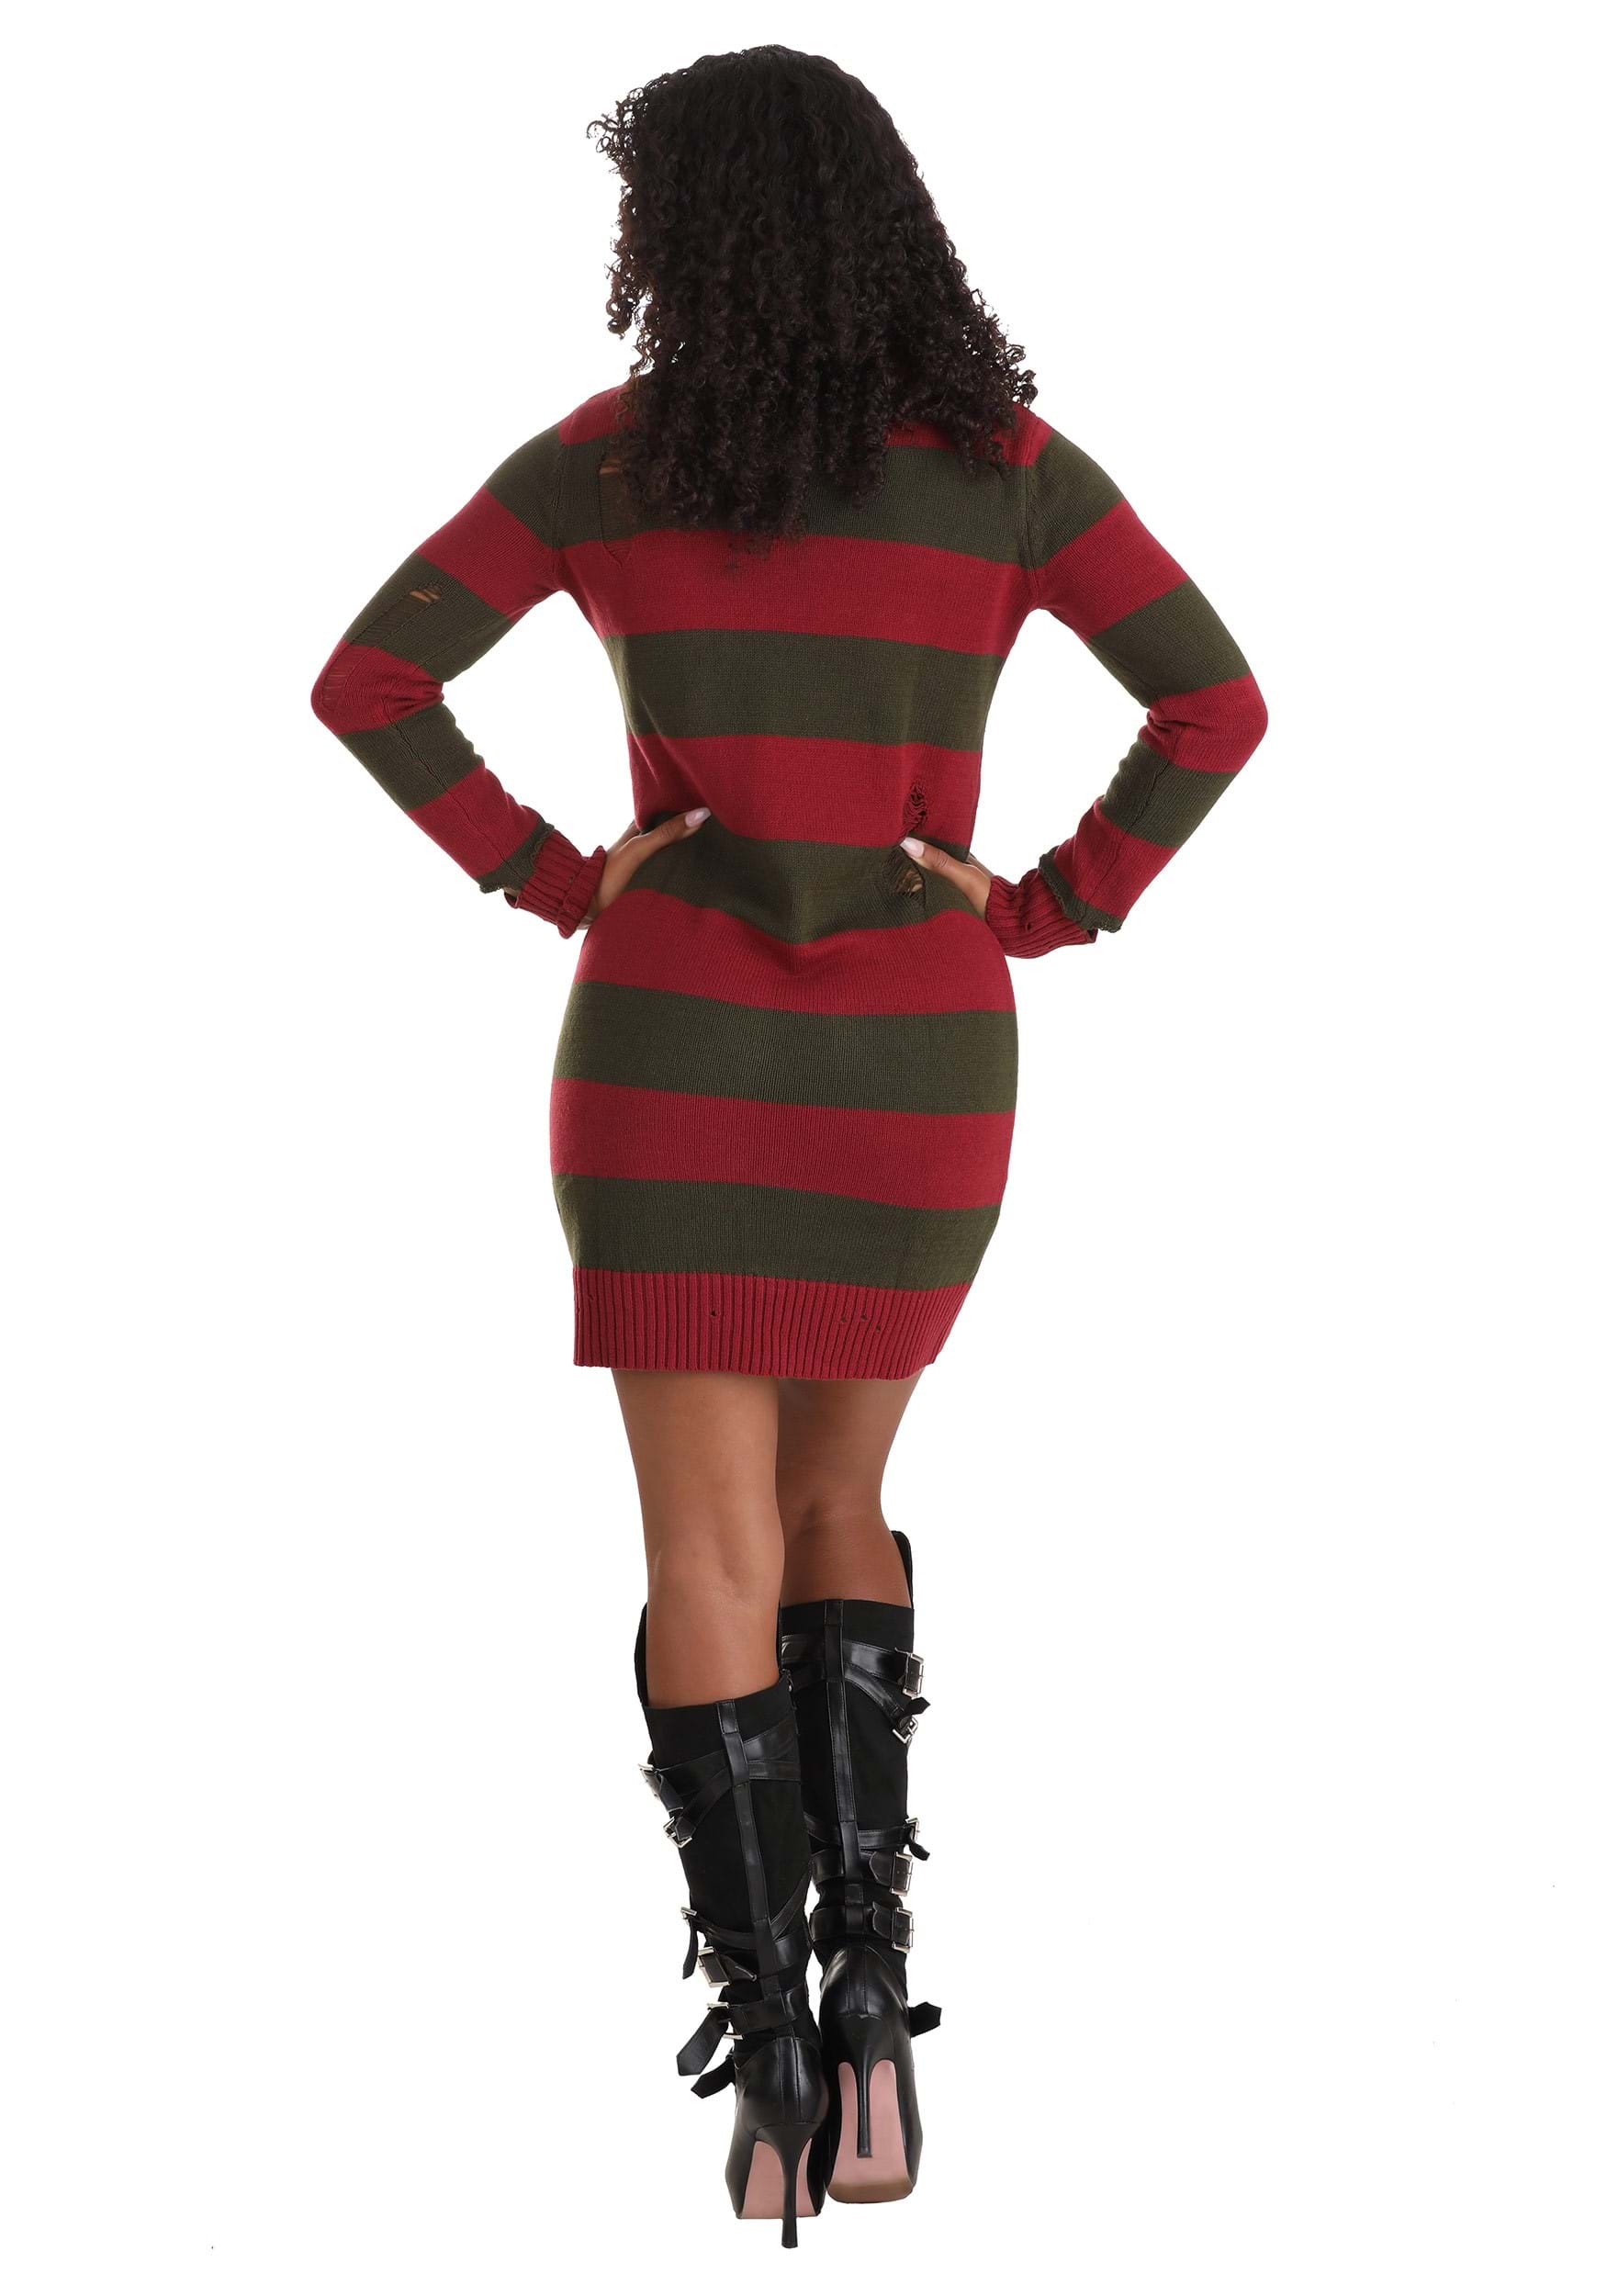 Freddy Krueger Costume Dress